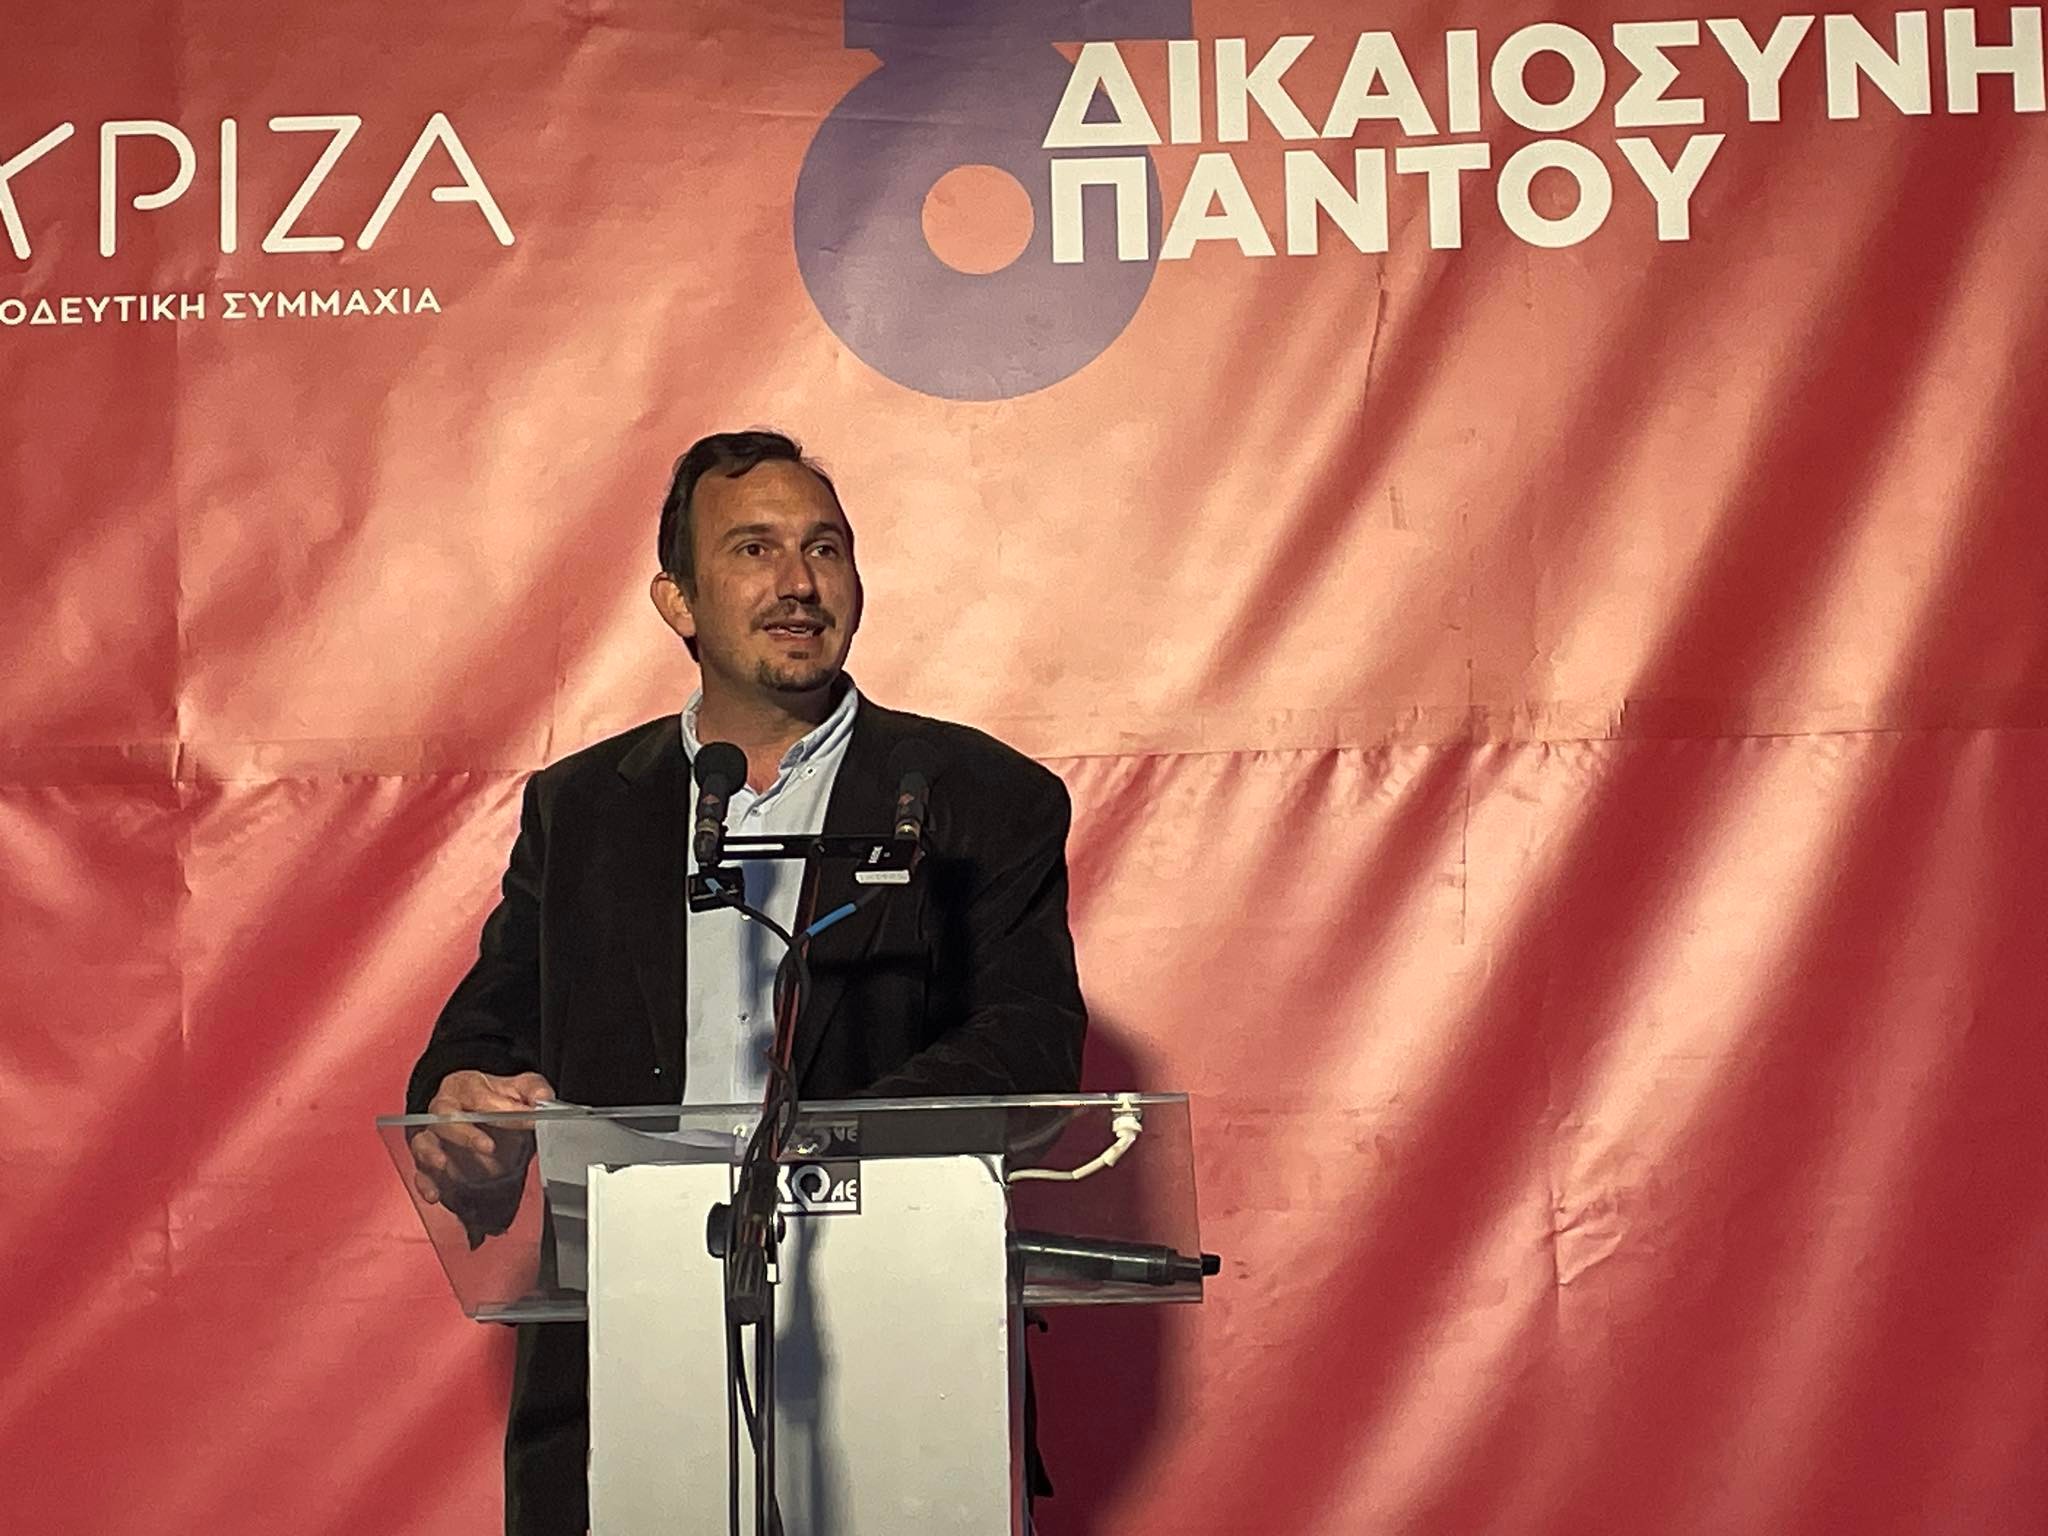 Παρουσίαση ψηφοδελτίου του ΣΥΡΙΖΑ με δριμεία κριτική κατά της κυβέρνησης: «Ως εδώ!»